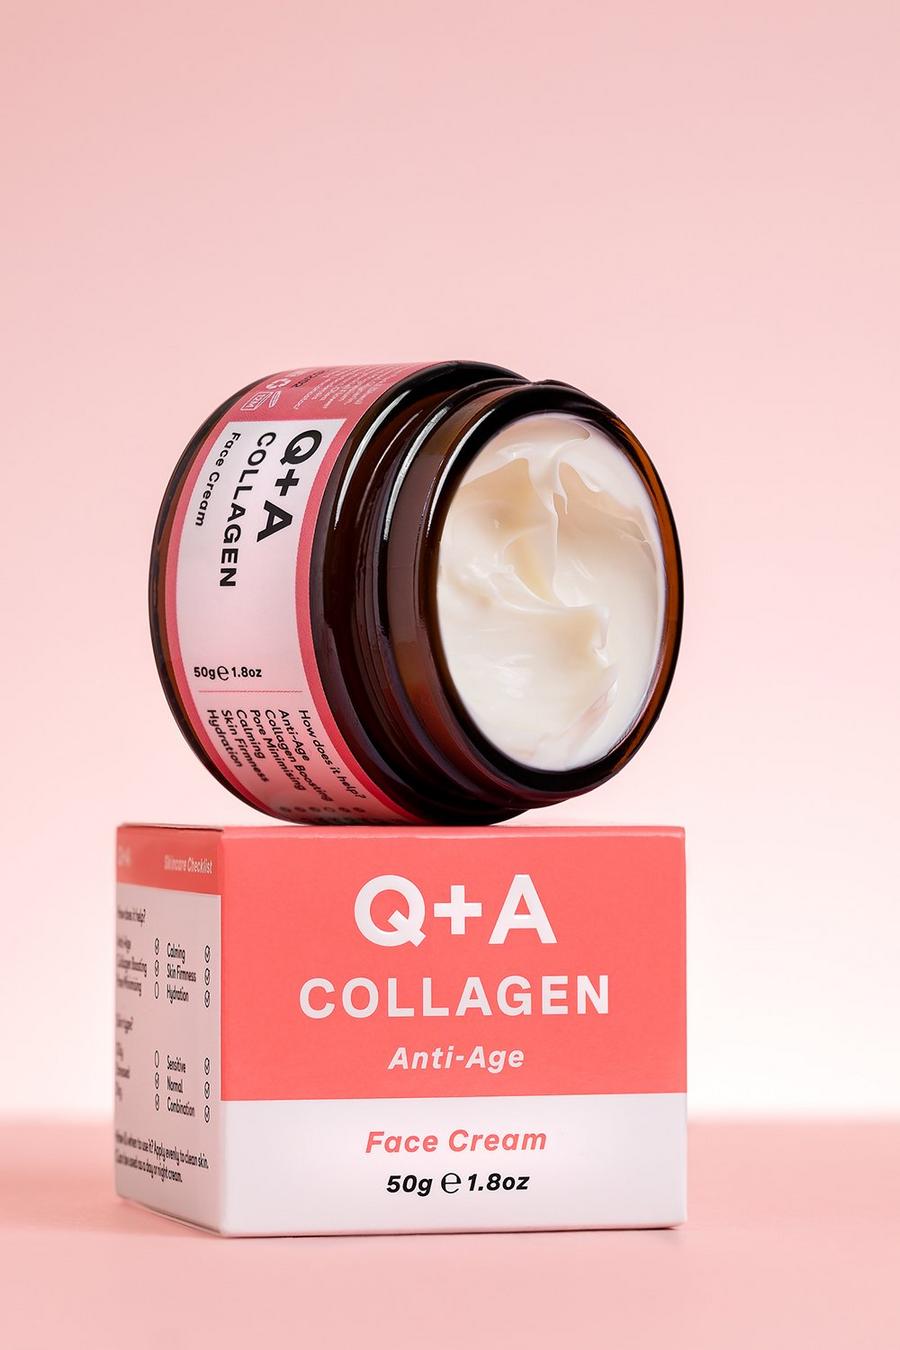 Clear clair Q+A Collagen Face Cream 50g 